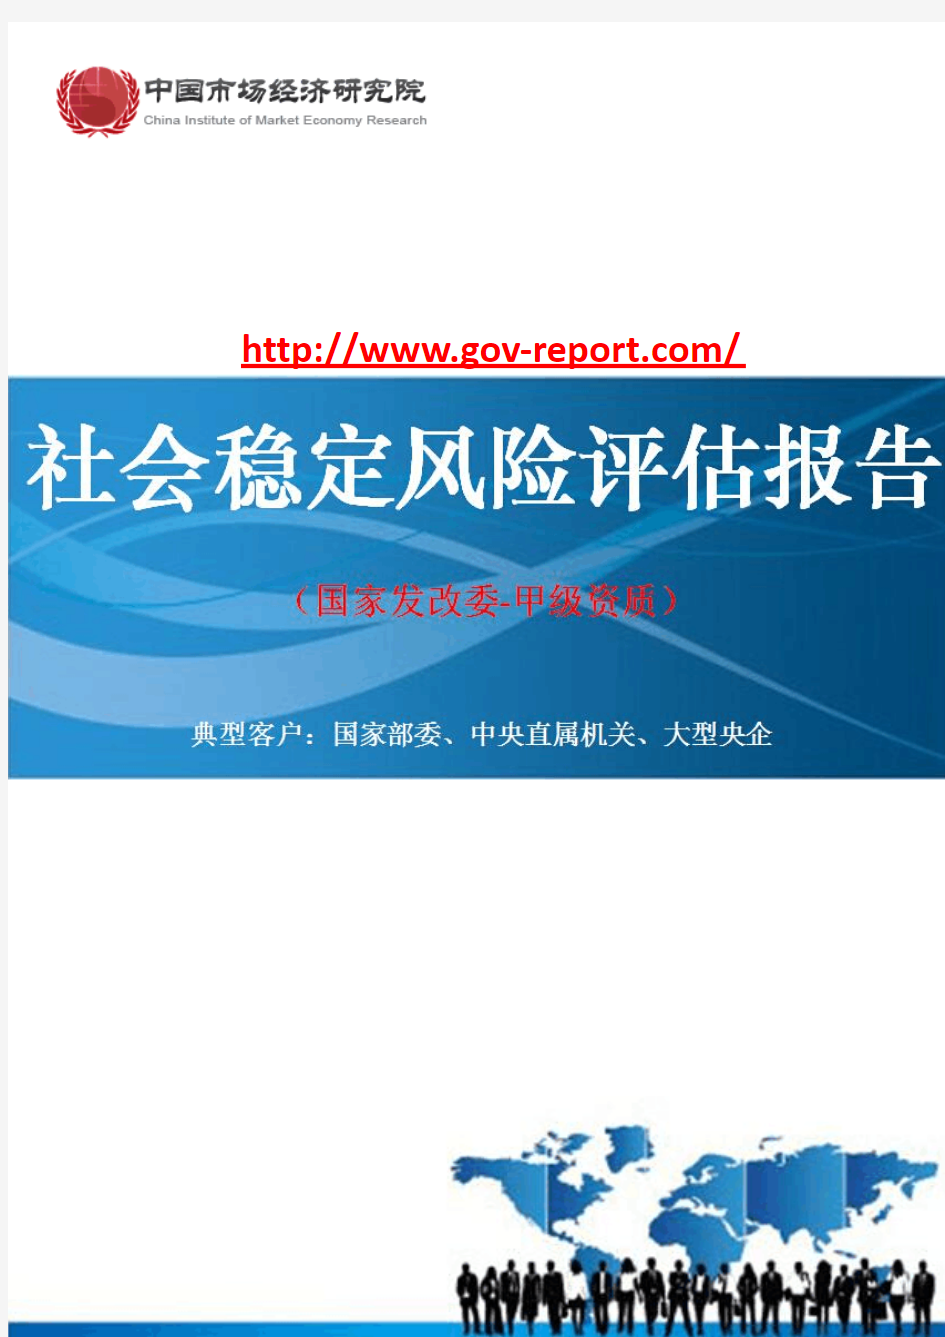 热电(2×35万千瓦)扩建工程项目社会稳定风险评估报告(中国市场经济研究院-工程咨询-甲级资质)